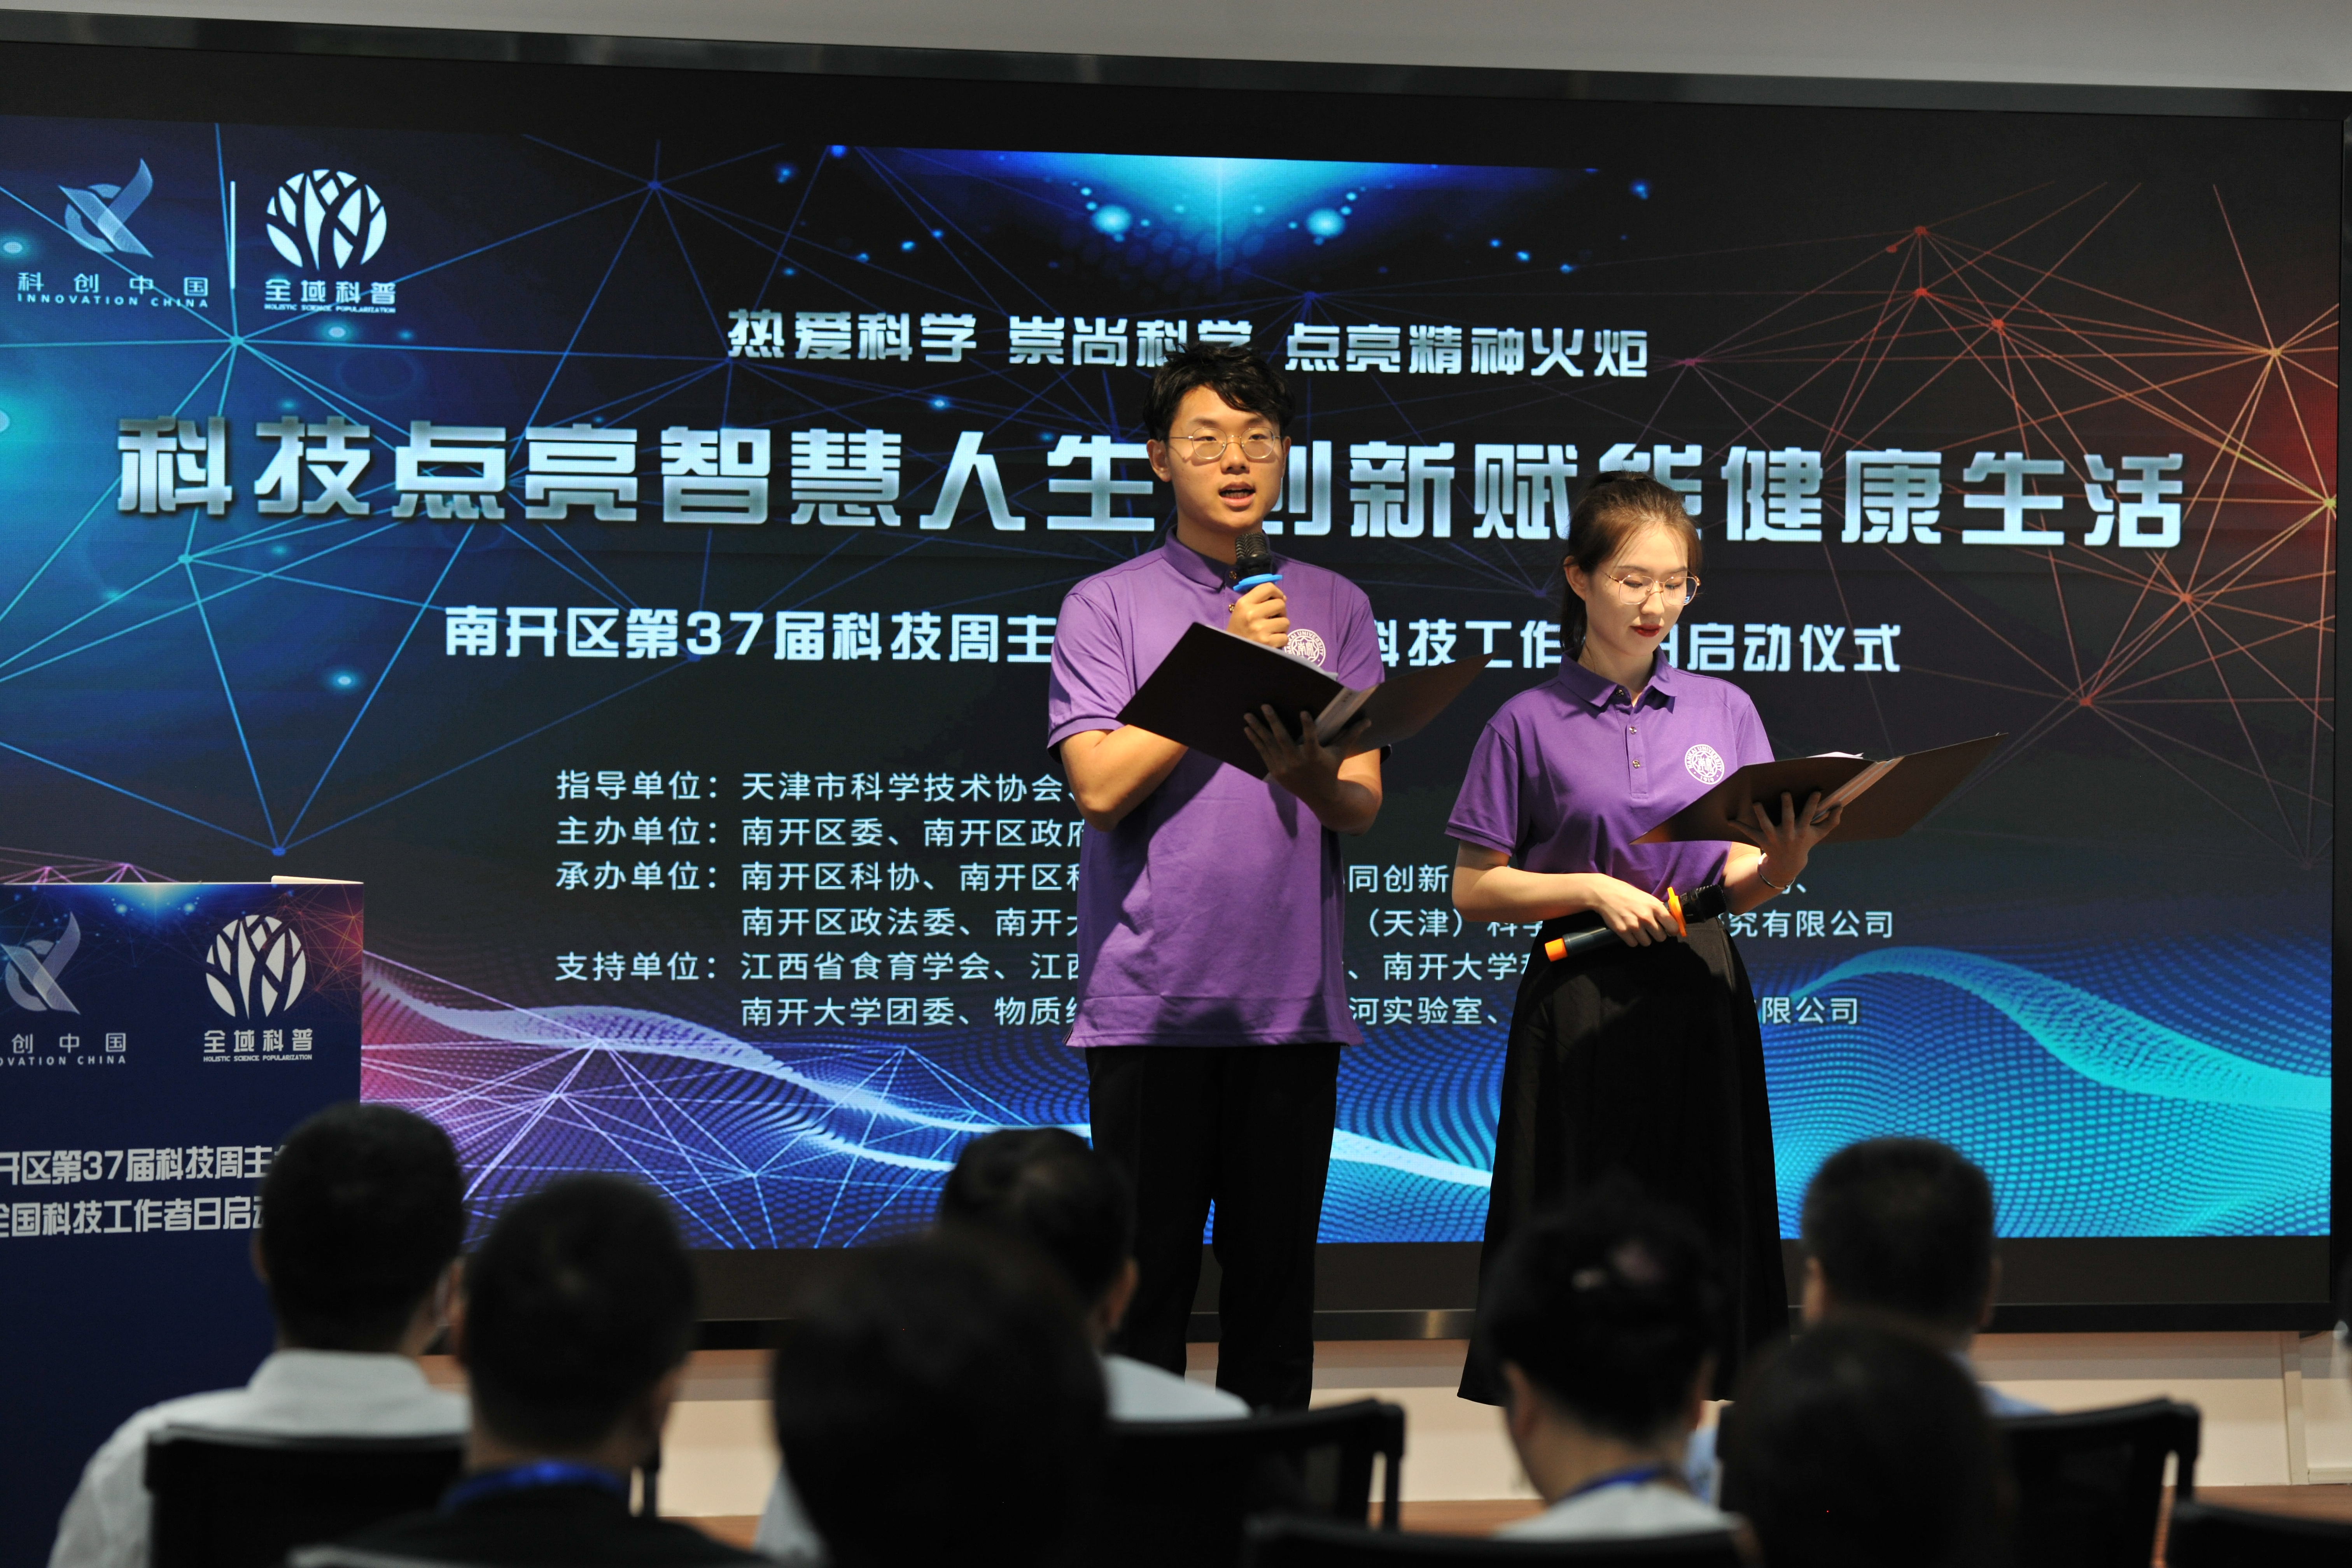 第37届科技周主会场活动在天津南开区启动